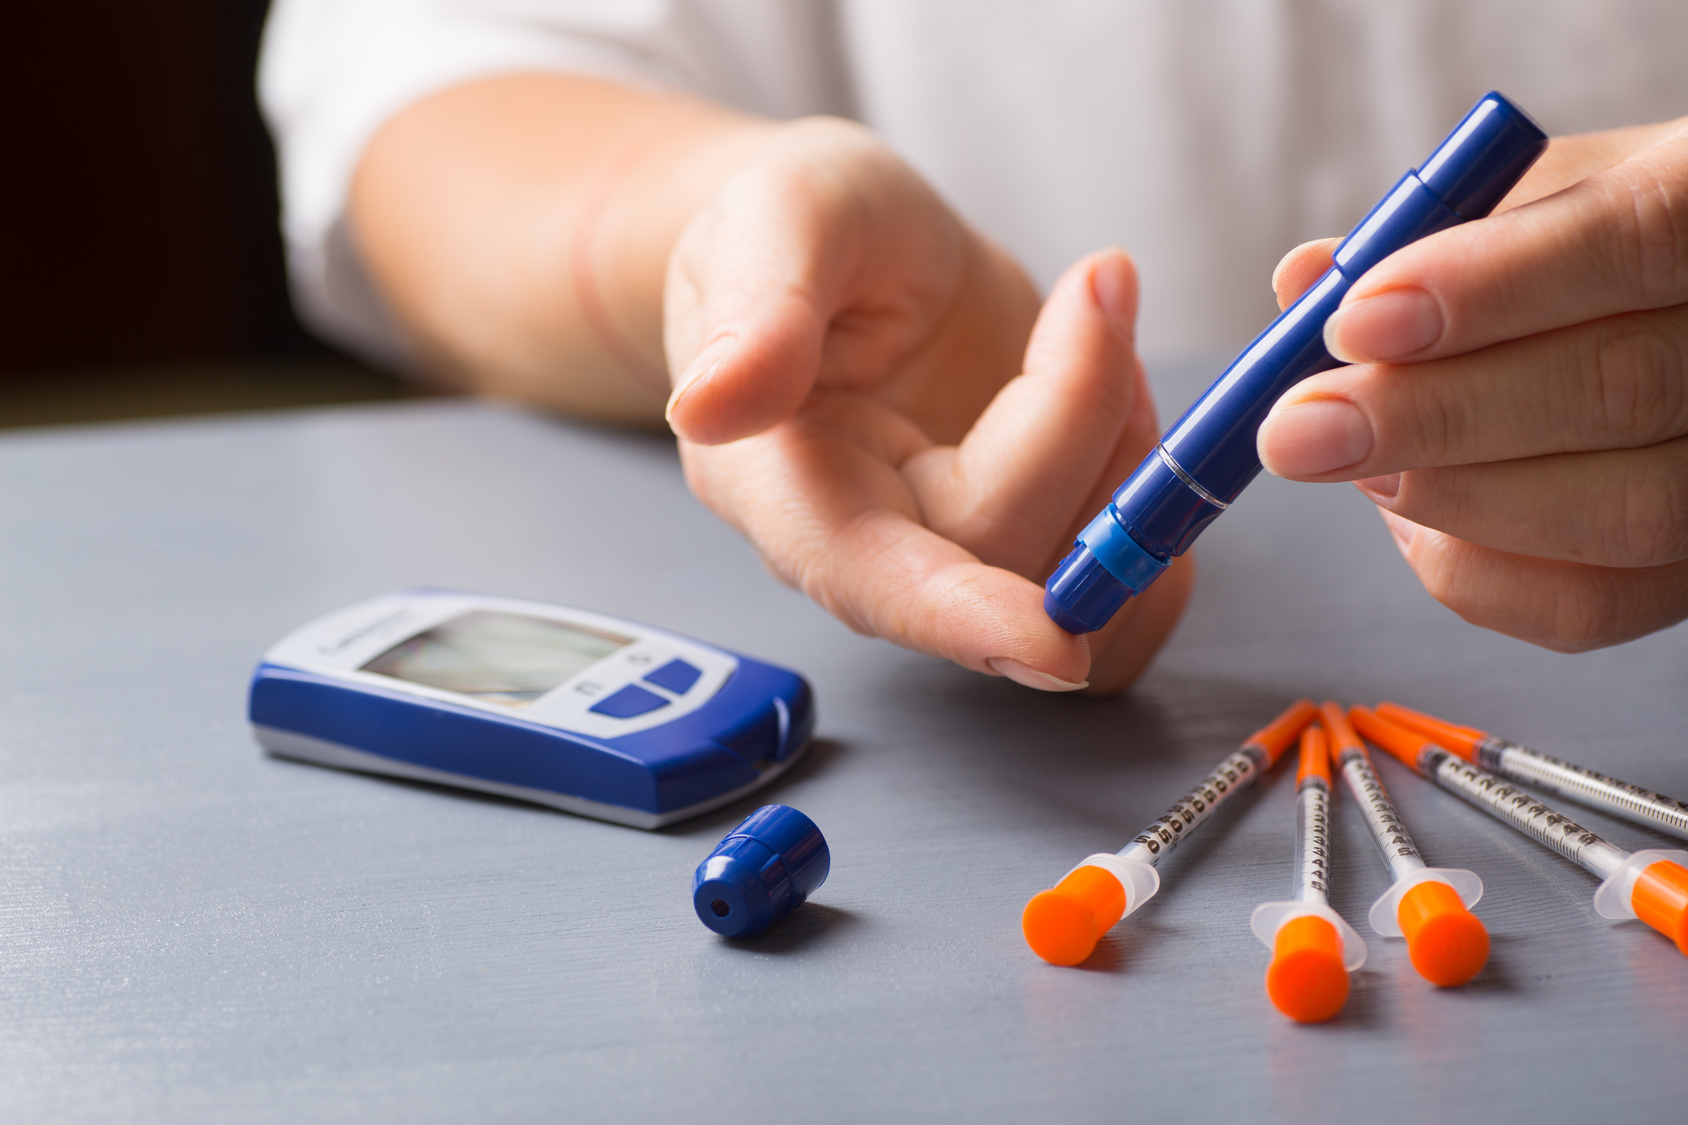 diabete-diagnosi-precoce-rischi